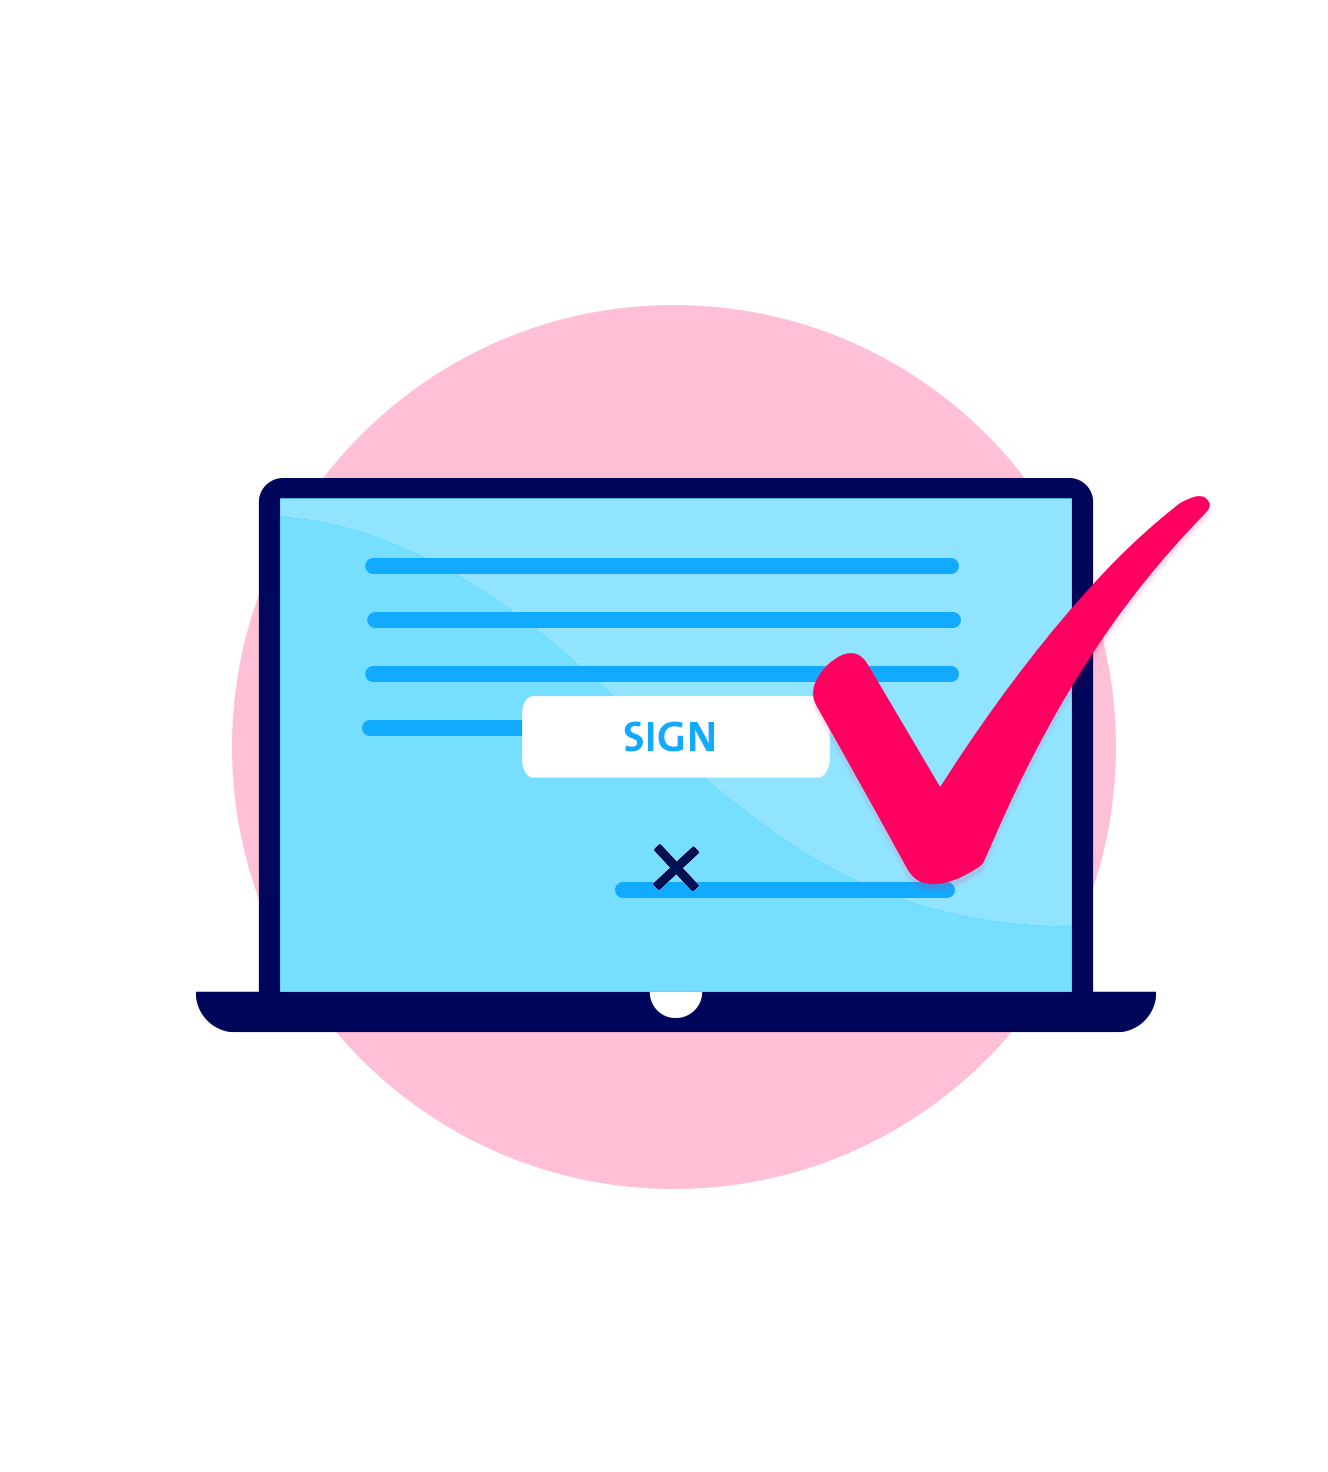 Signature request in signature solution